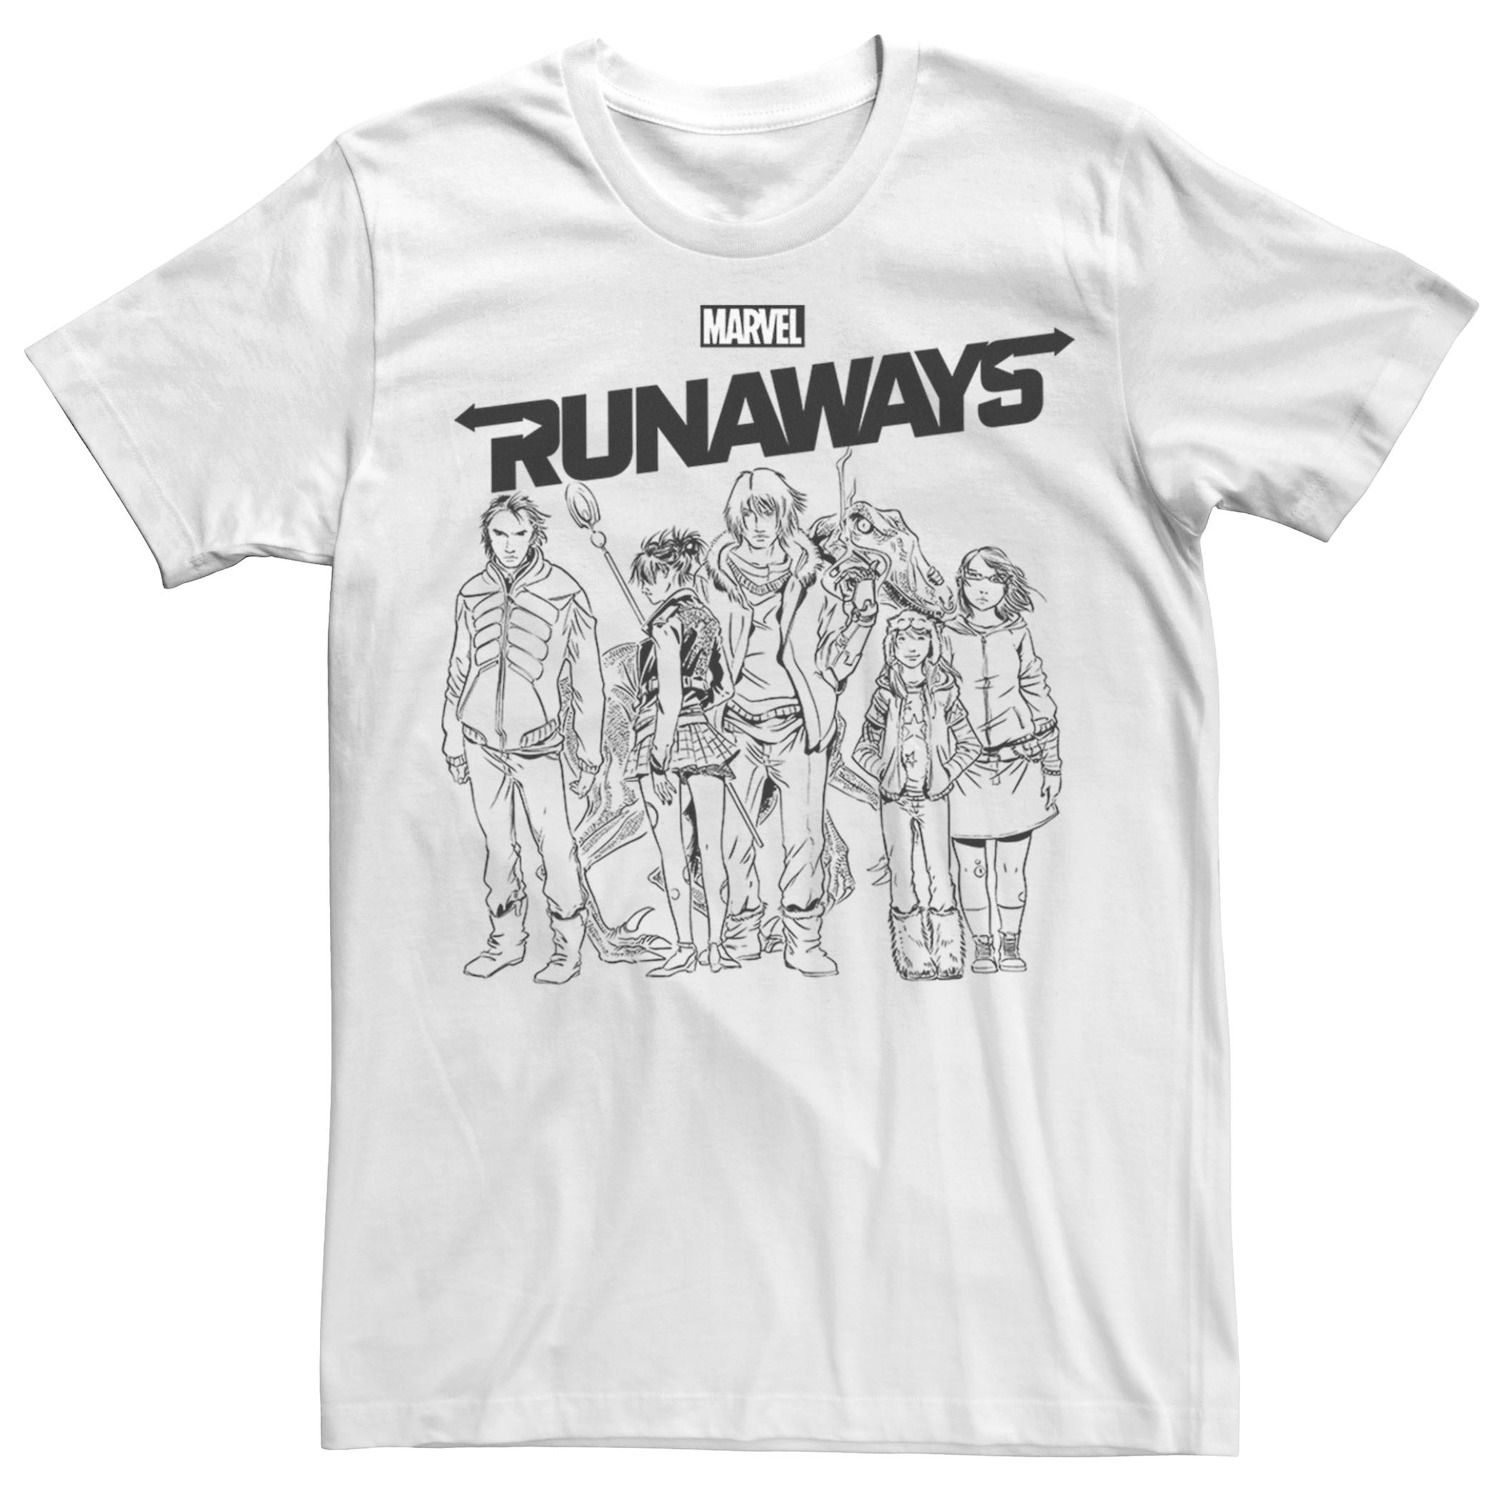 Мужская футболка Runaways Group Shot с портретным рисунком и контуром Marvel мужская худи с графическим плакатом runaways group marvel